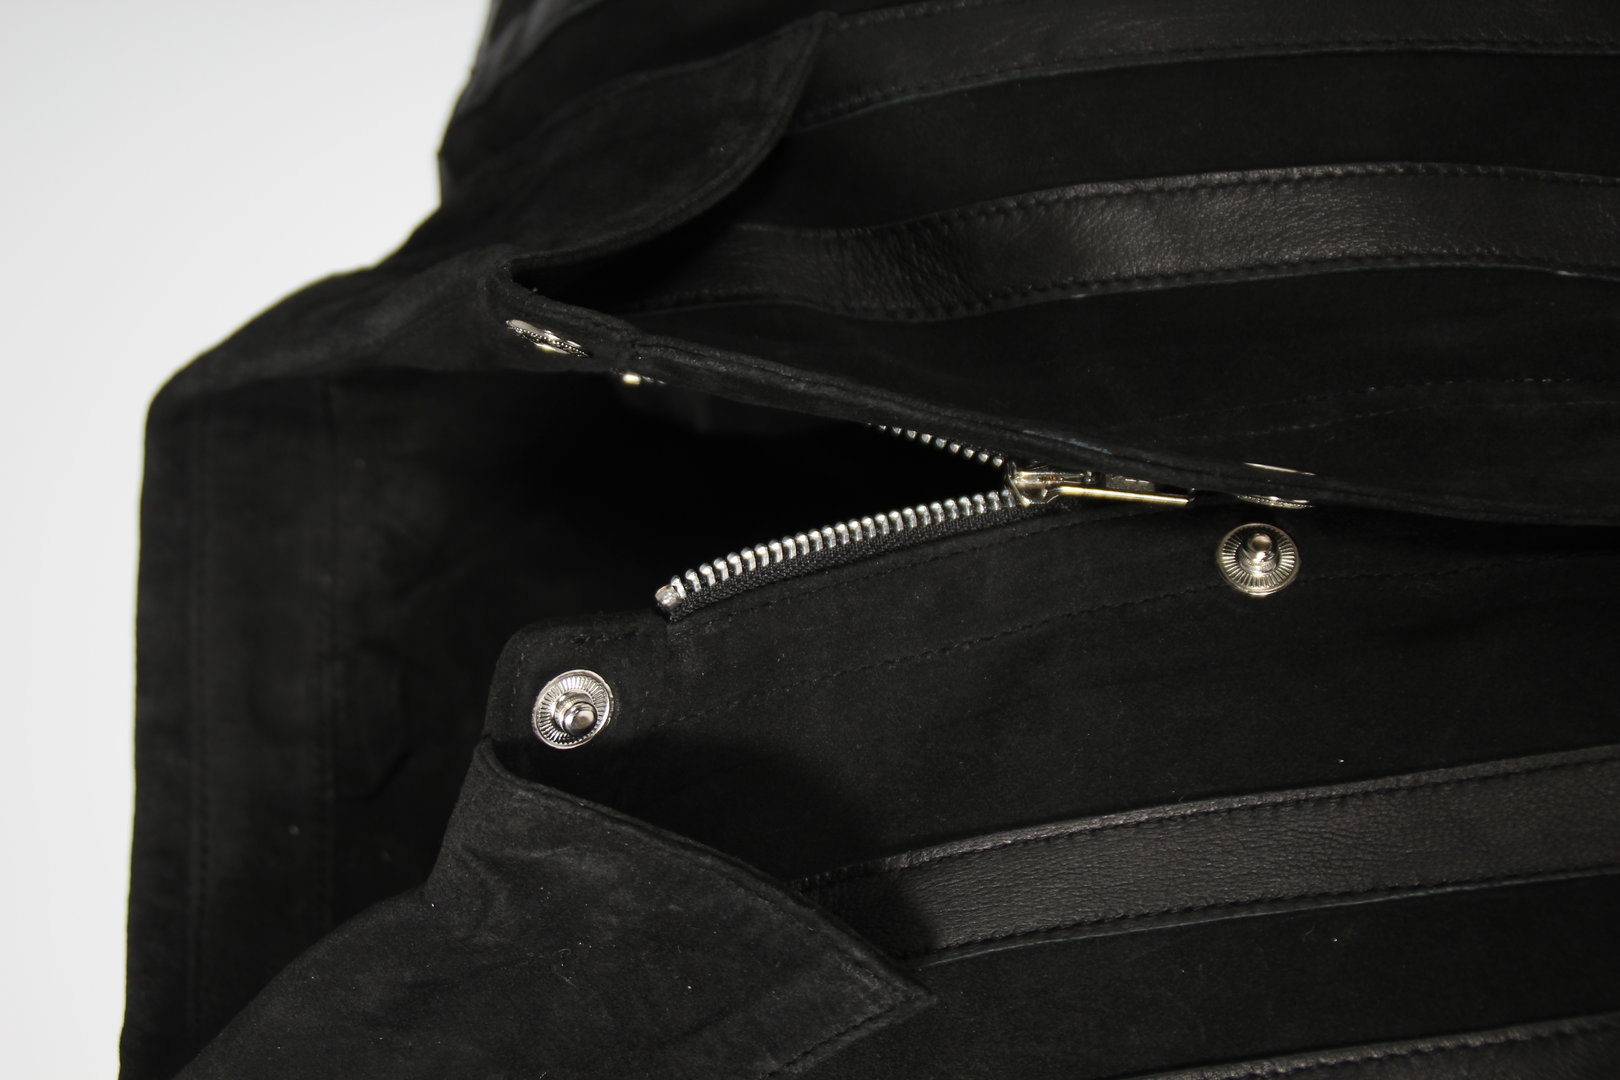 Lederhemd Lederjacke aus ECHT Leder/ Velourleder in schwarz